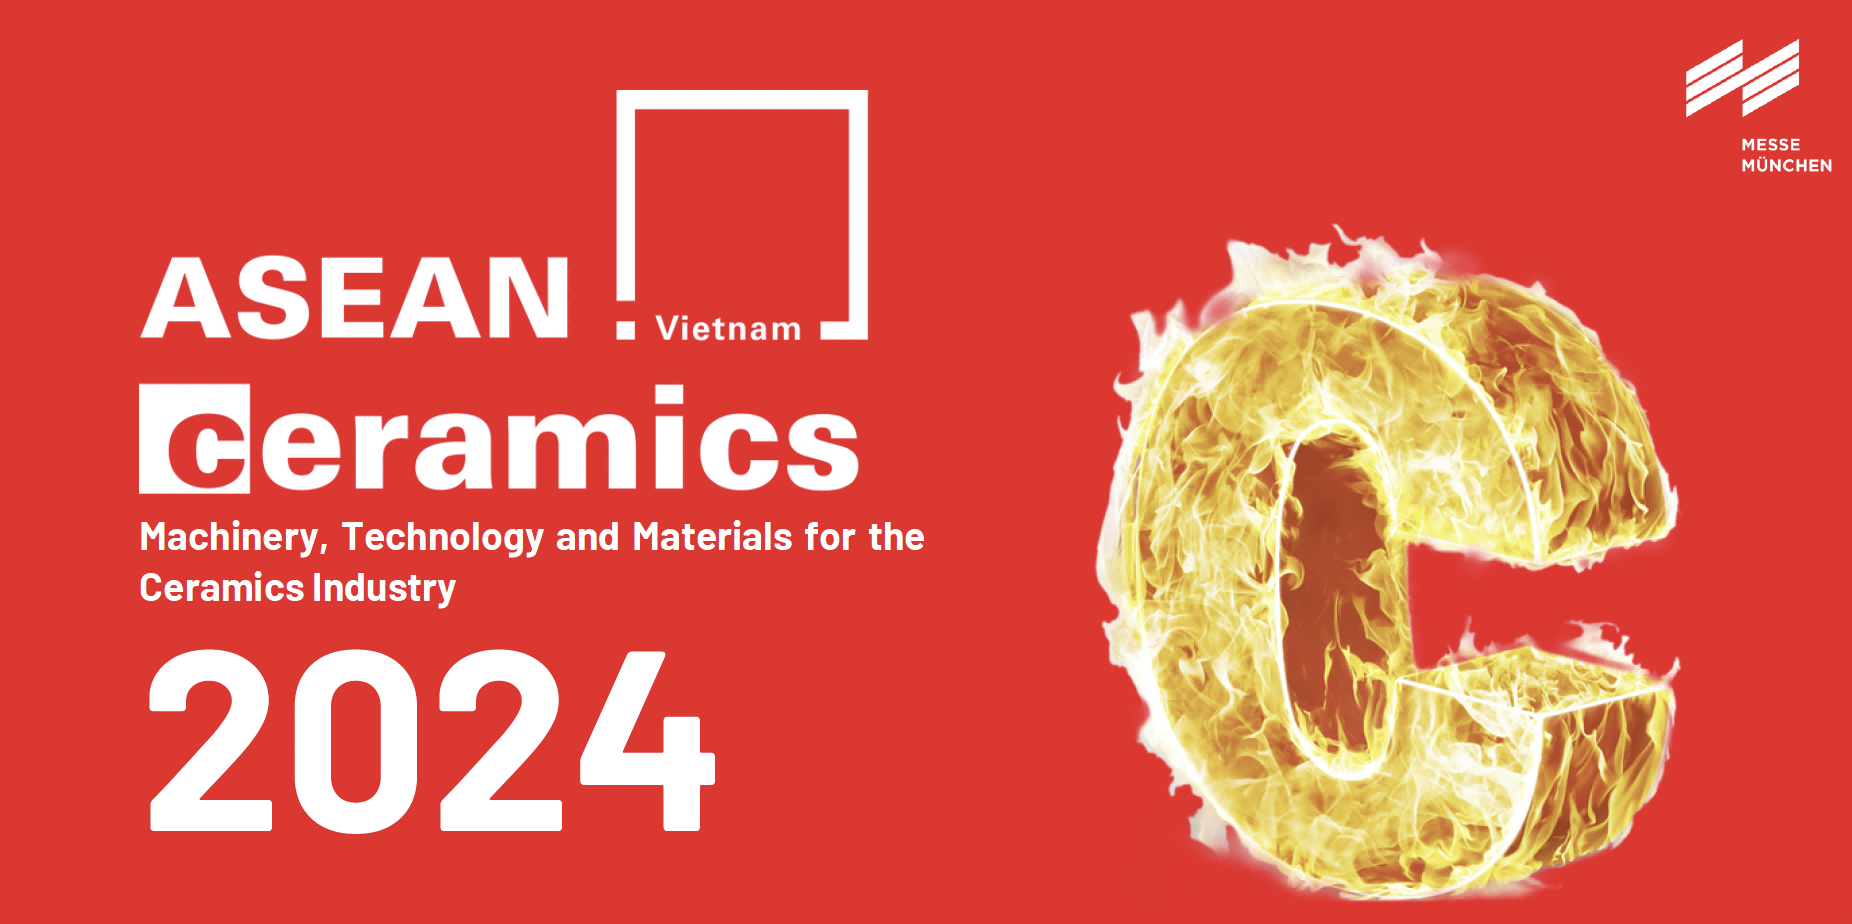 2024越南陶瓷展ASEAN Ceramics in Vietnam 报名开始啦